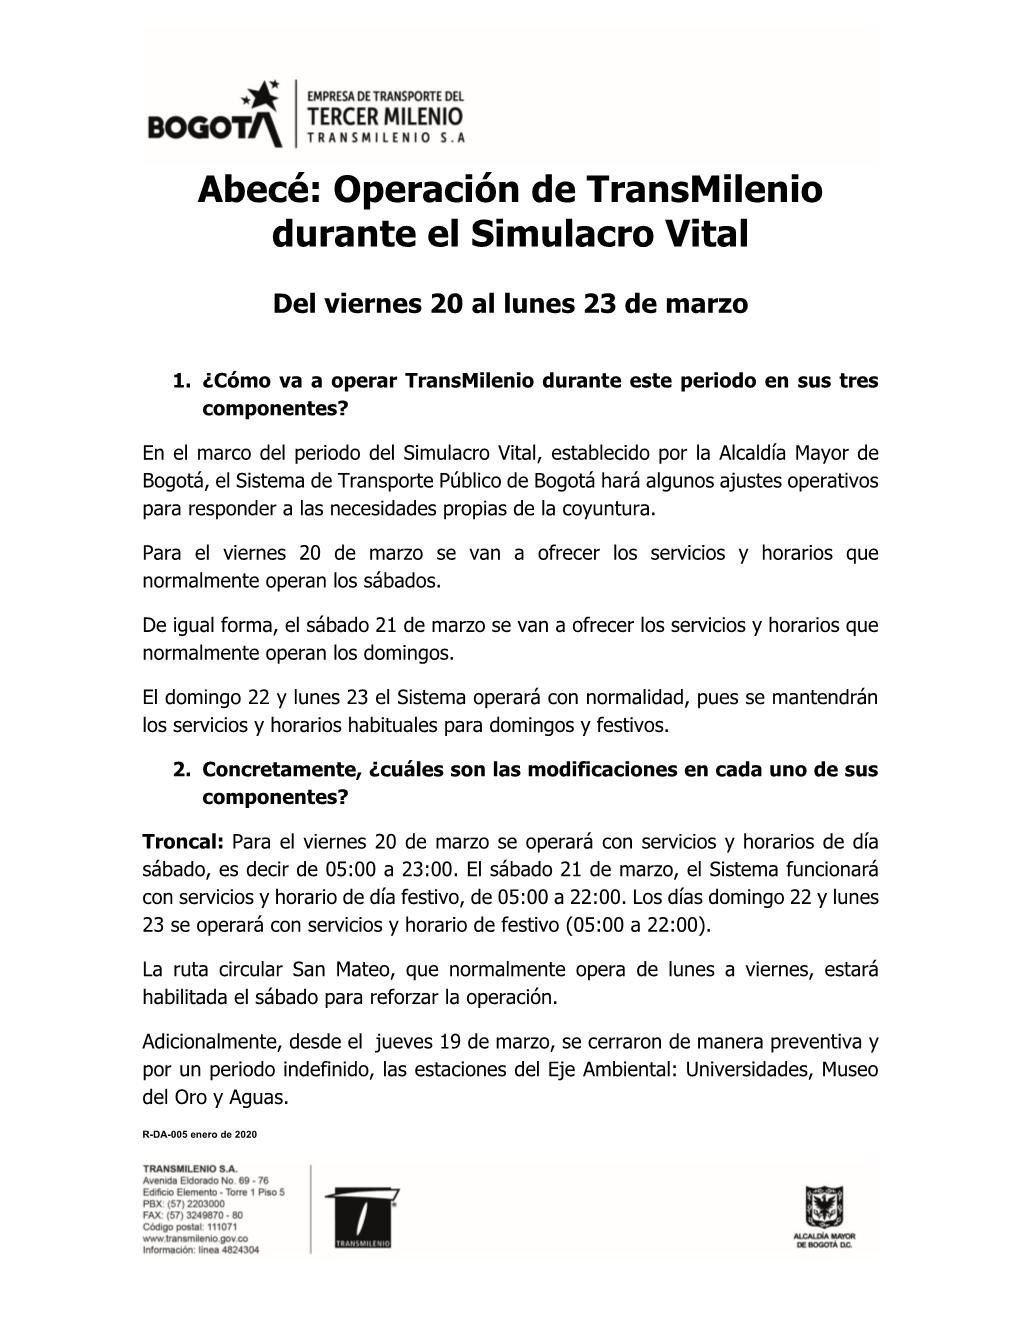 Abecé: Operación De Transmilenio Durante El Simulacro Vital